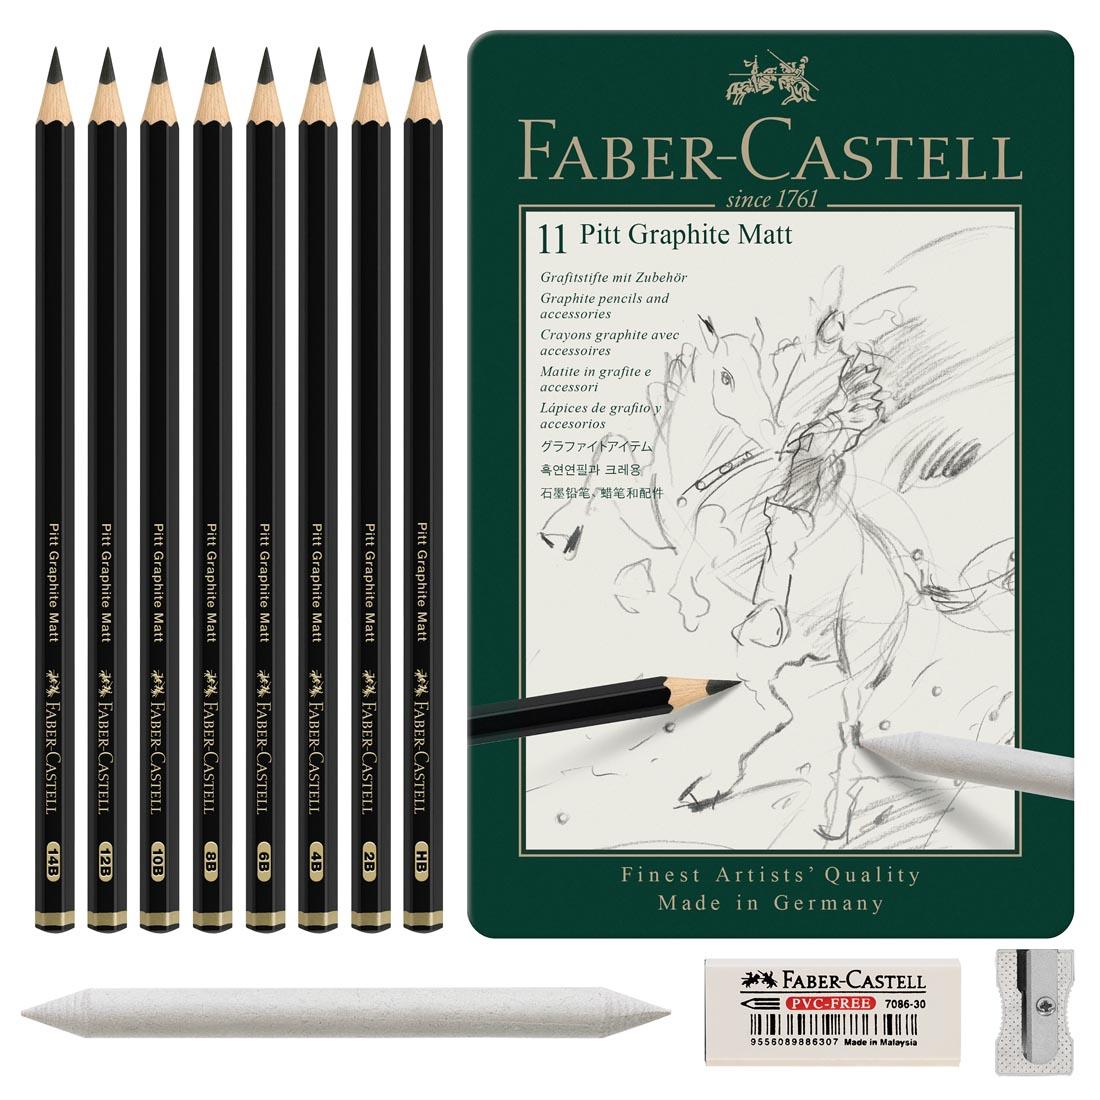 8 pencils, a stump and sharpener outside the tin of Faber-Castell Pitt Graphite Matt Pencil 11-Piece Set